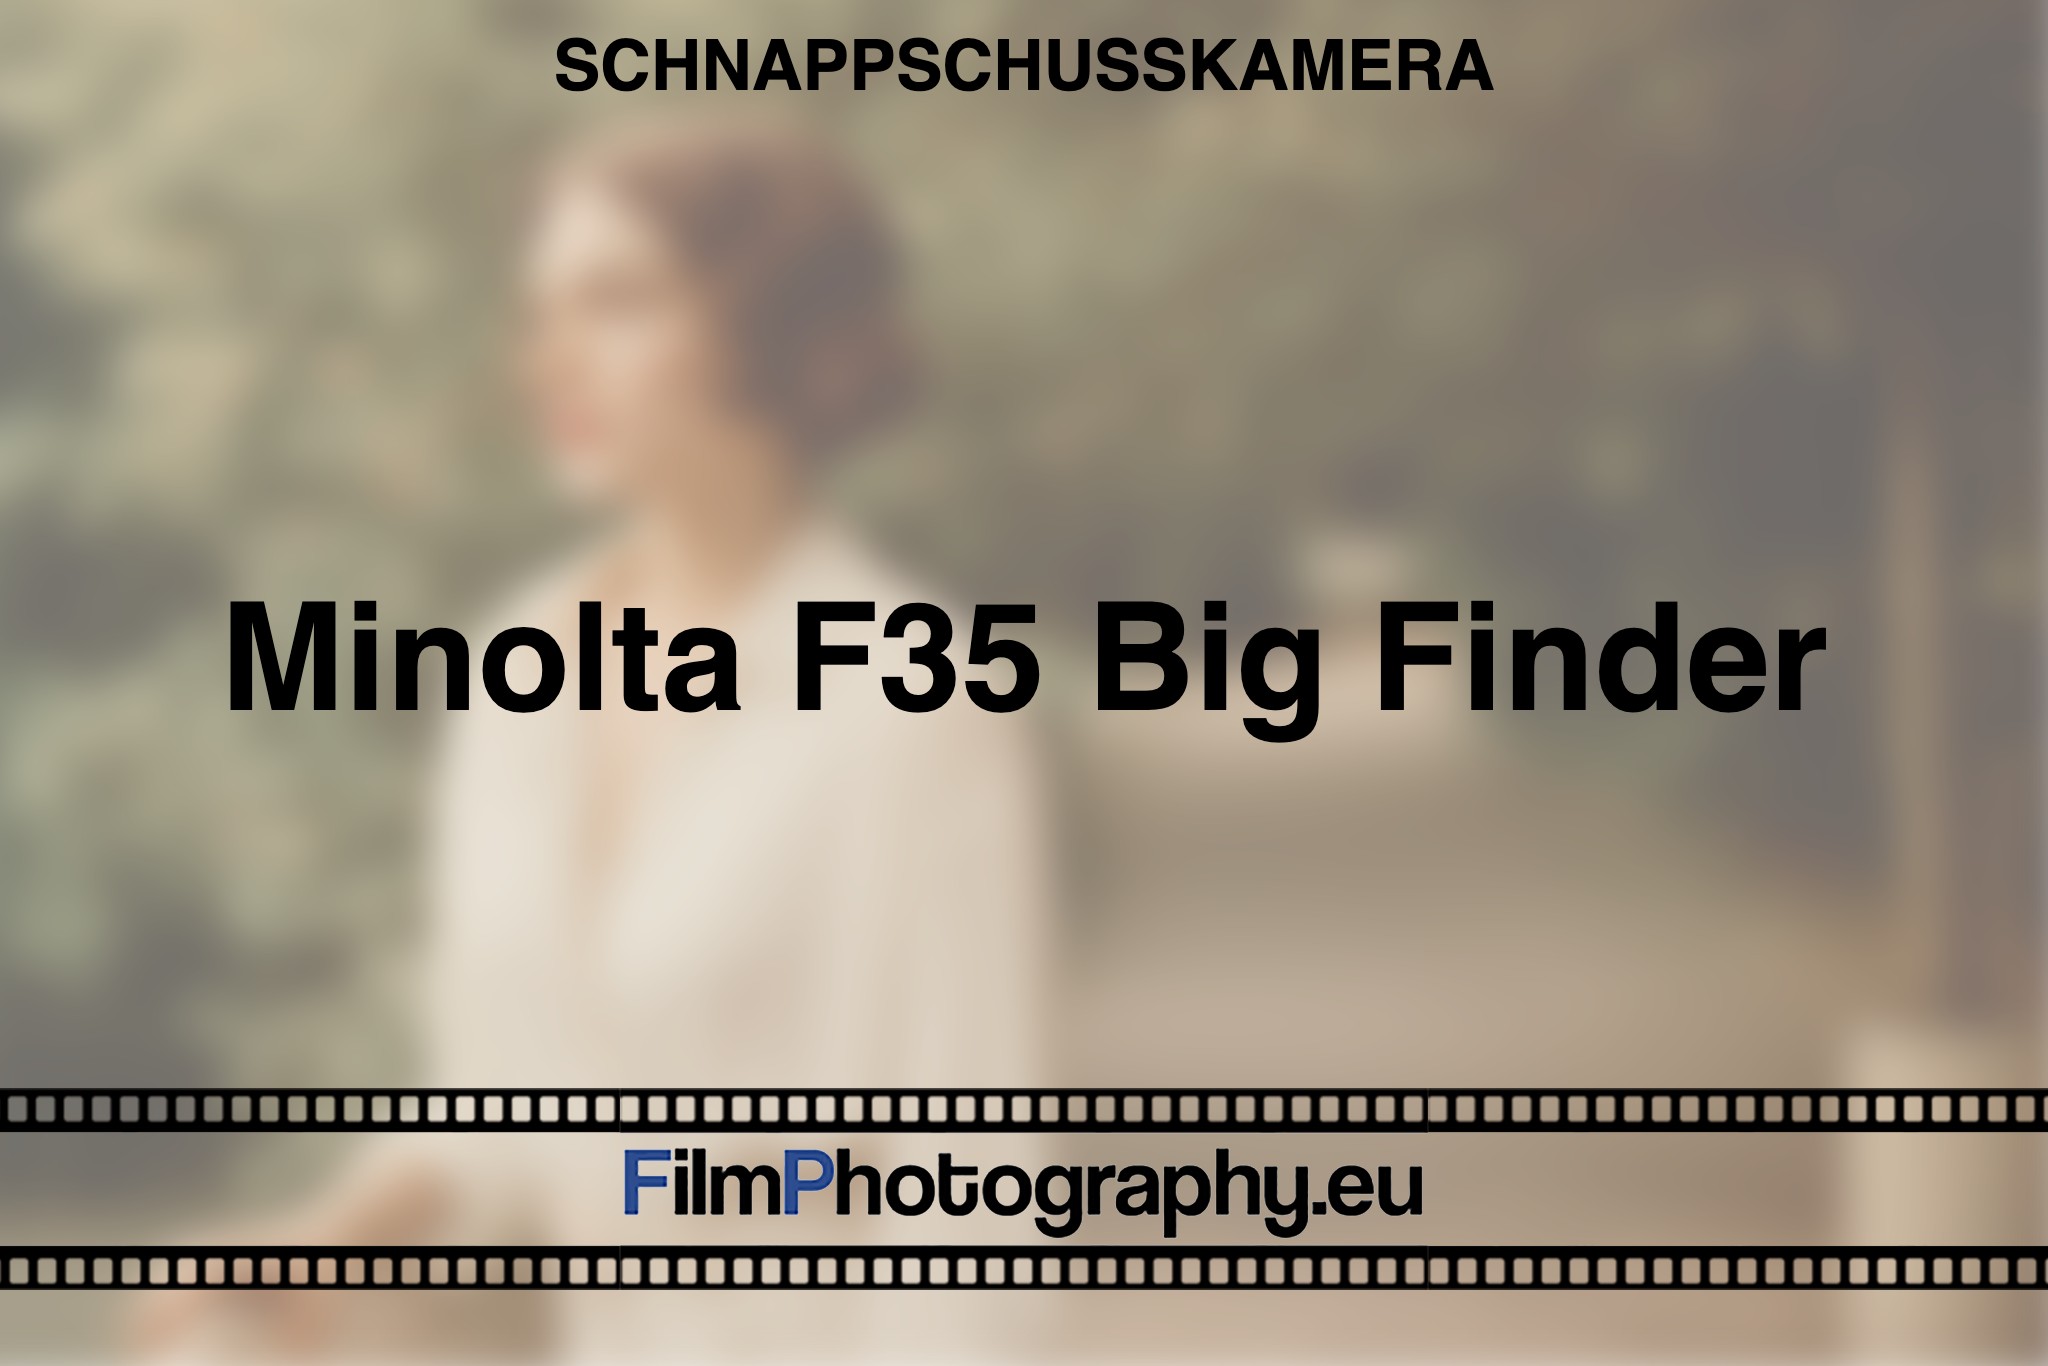 minolta-f35-big-finder-schnappschusskamera-bnv